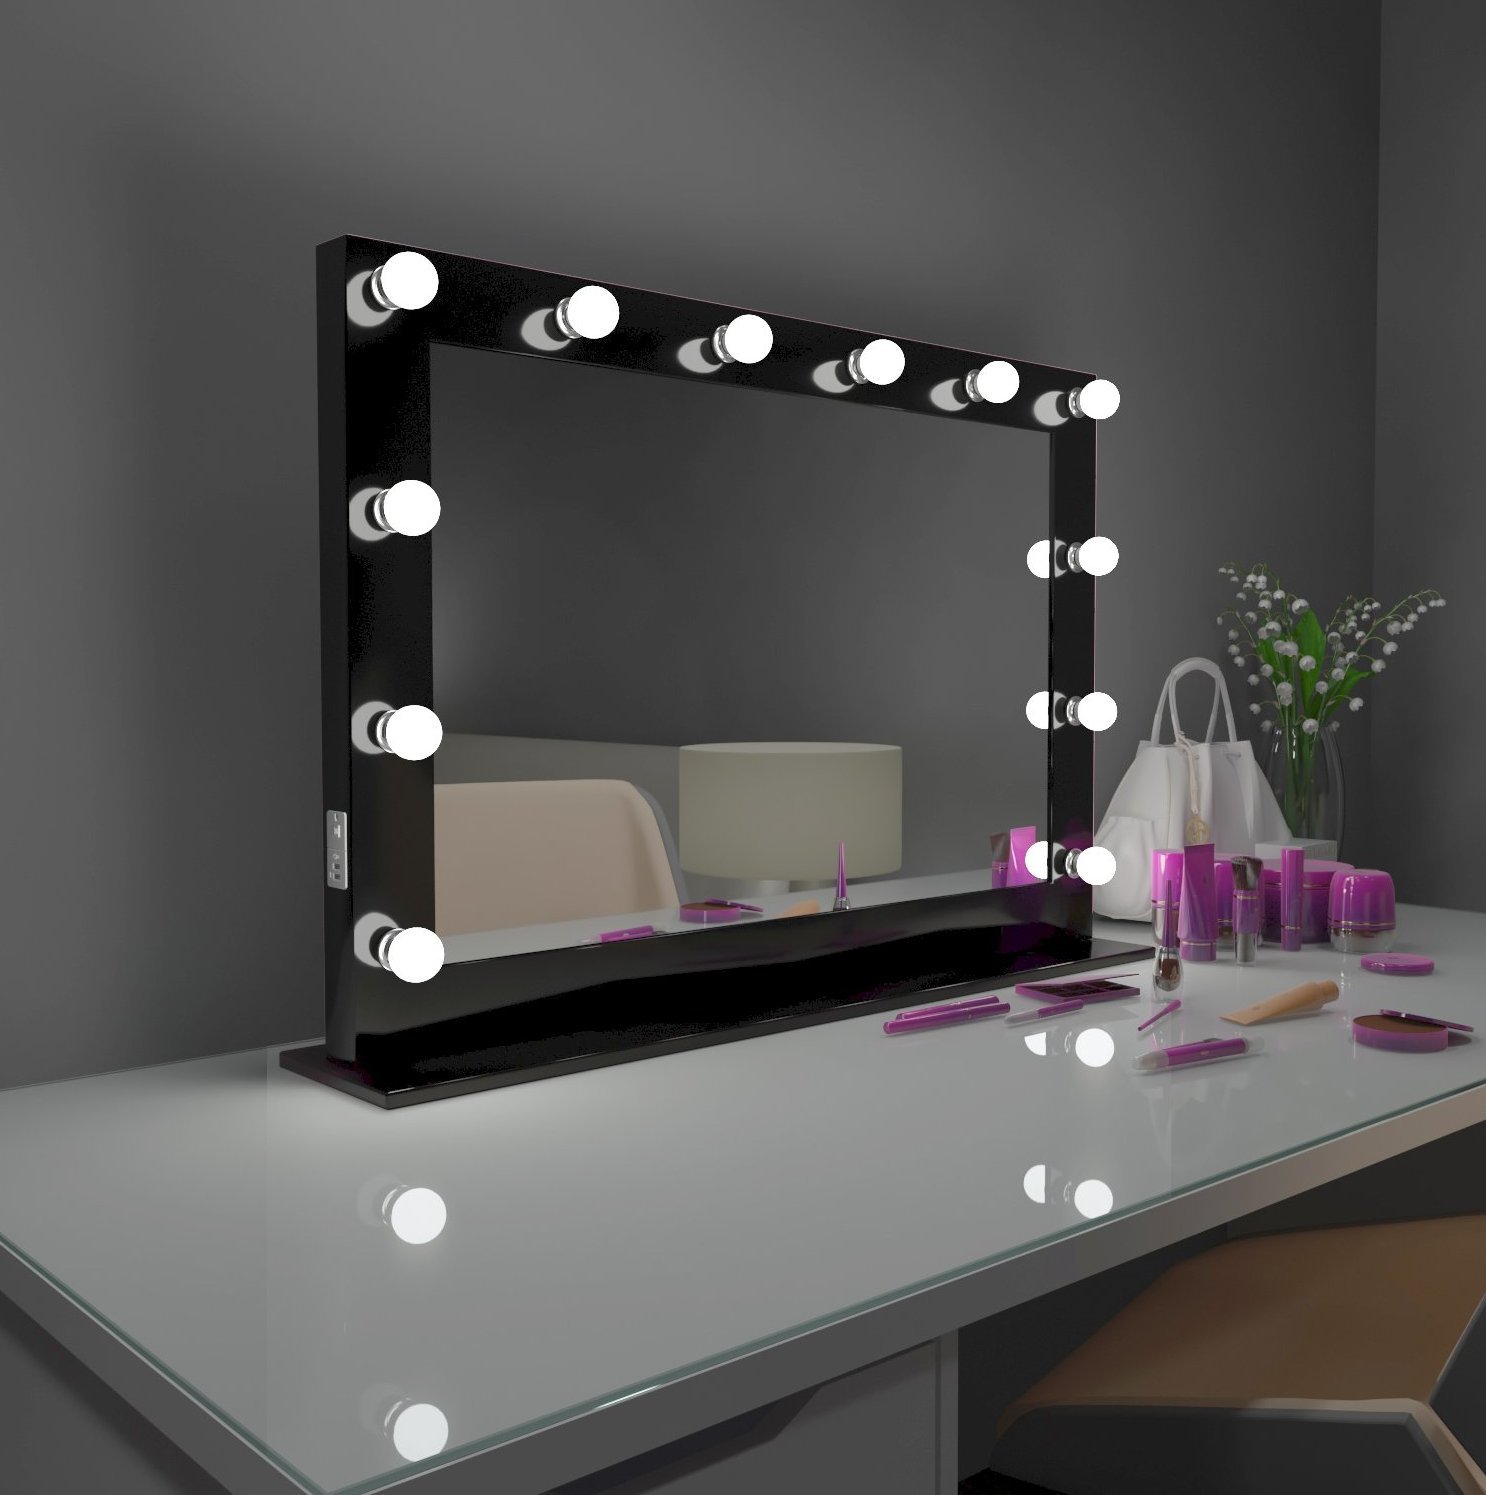 Зеркало для макияжа с подсветкой своими руками 2019 год